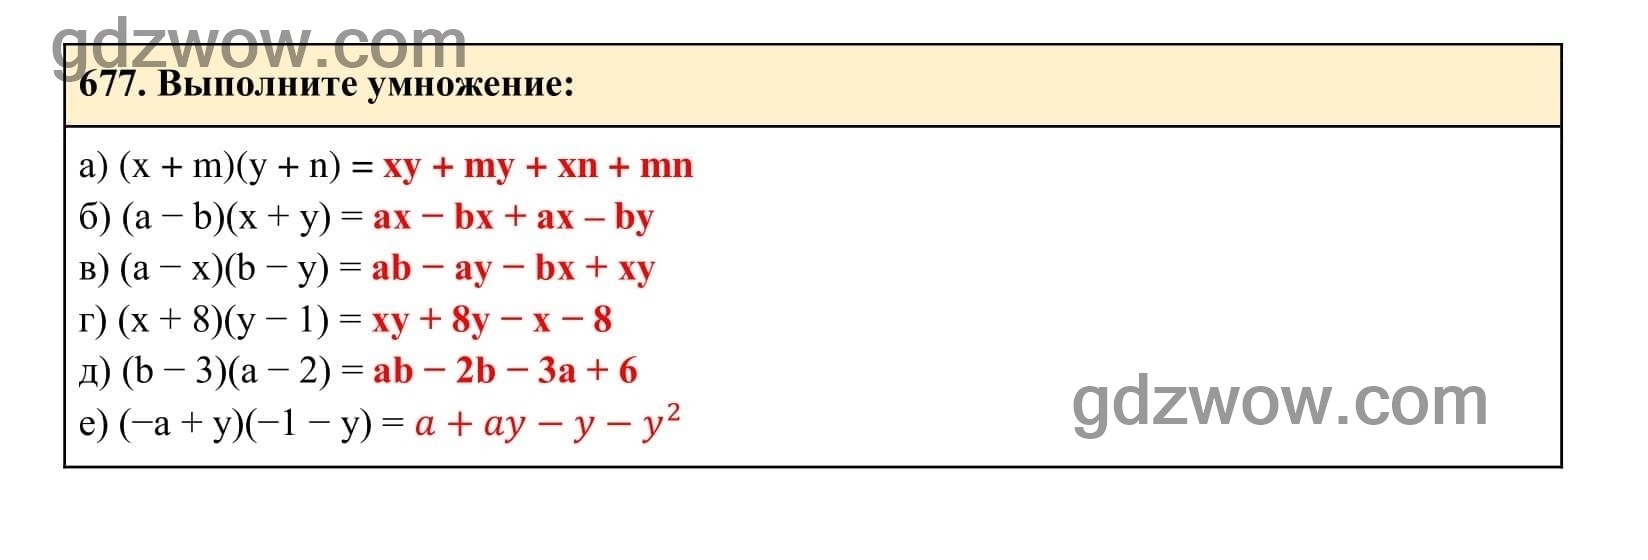 Упражнение 677 - ГДЗ по Алгебре 7 класс Учебник Макарычев (решебник) - GDZwow